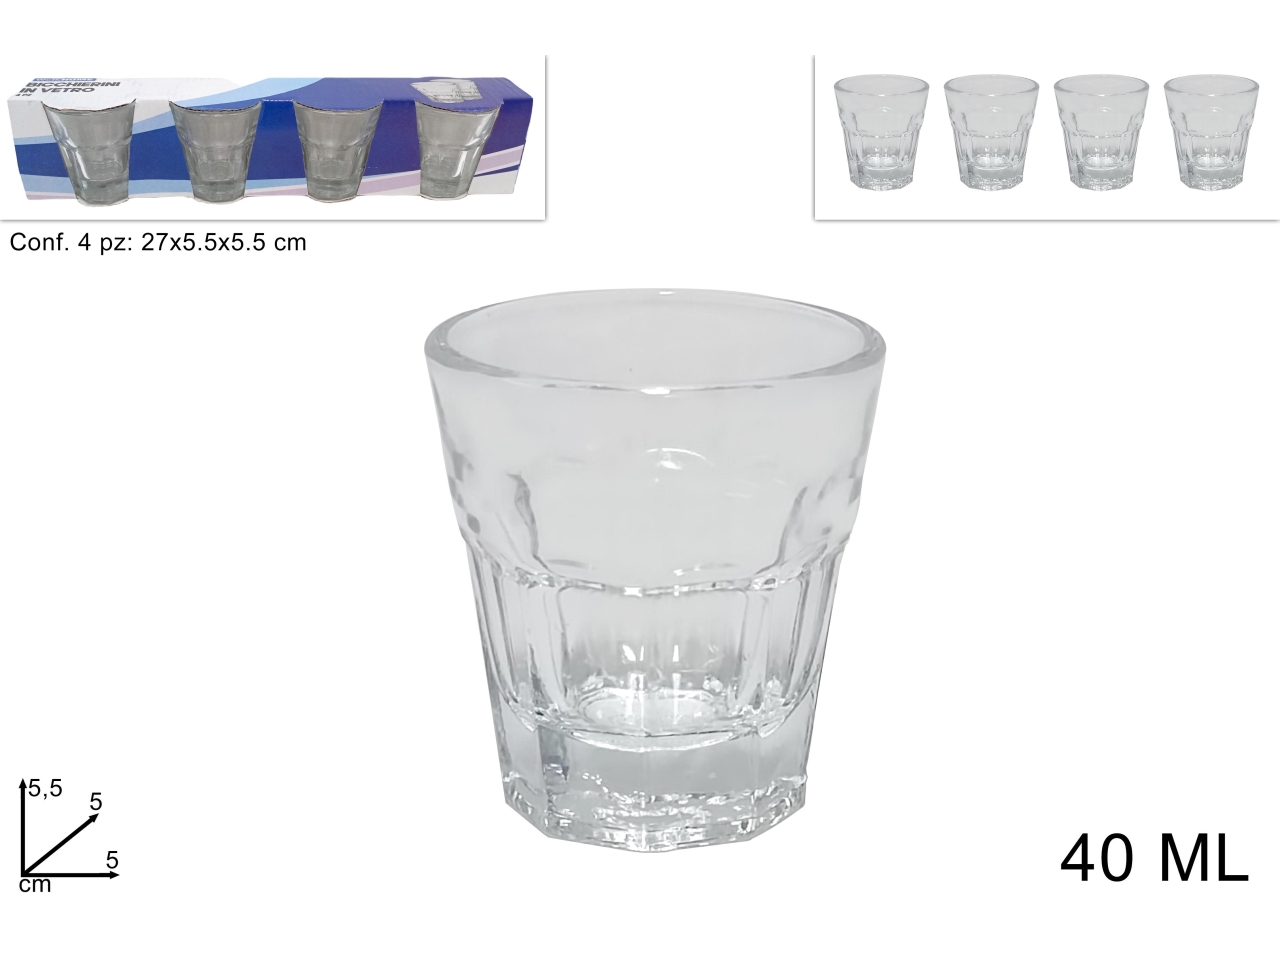 Bicchierini di vetro - la confezione contiene 4 bicchieri